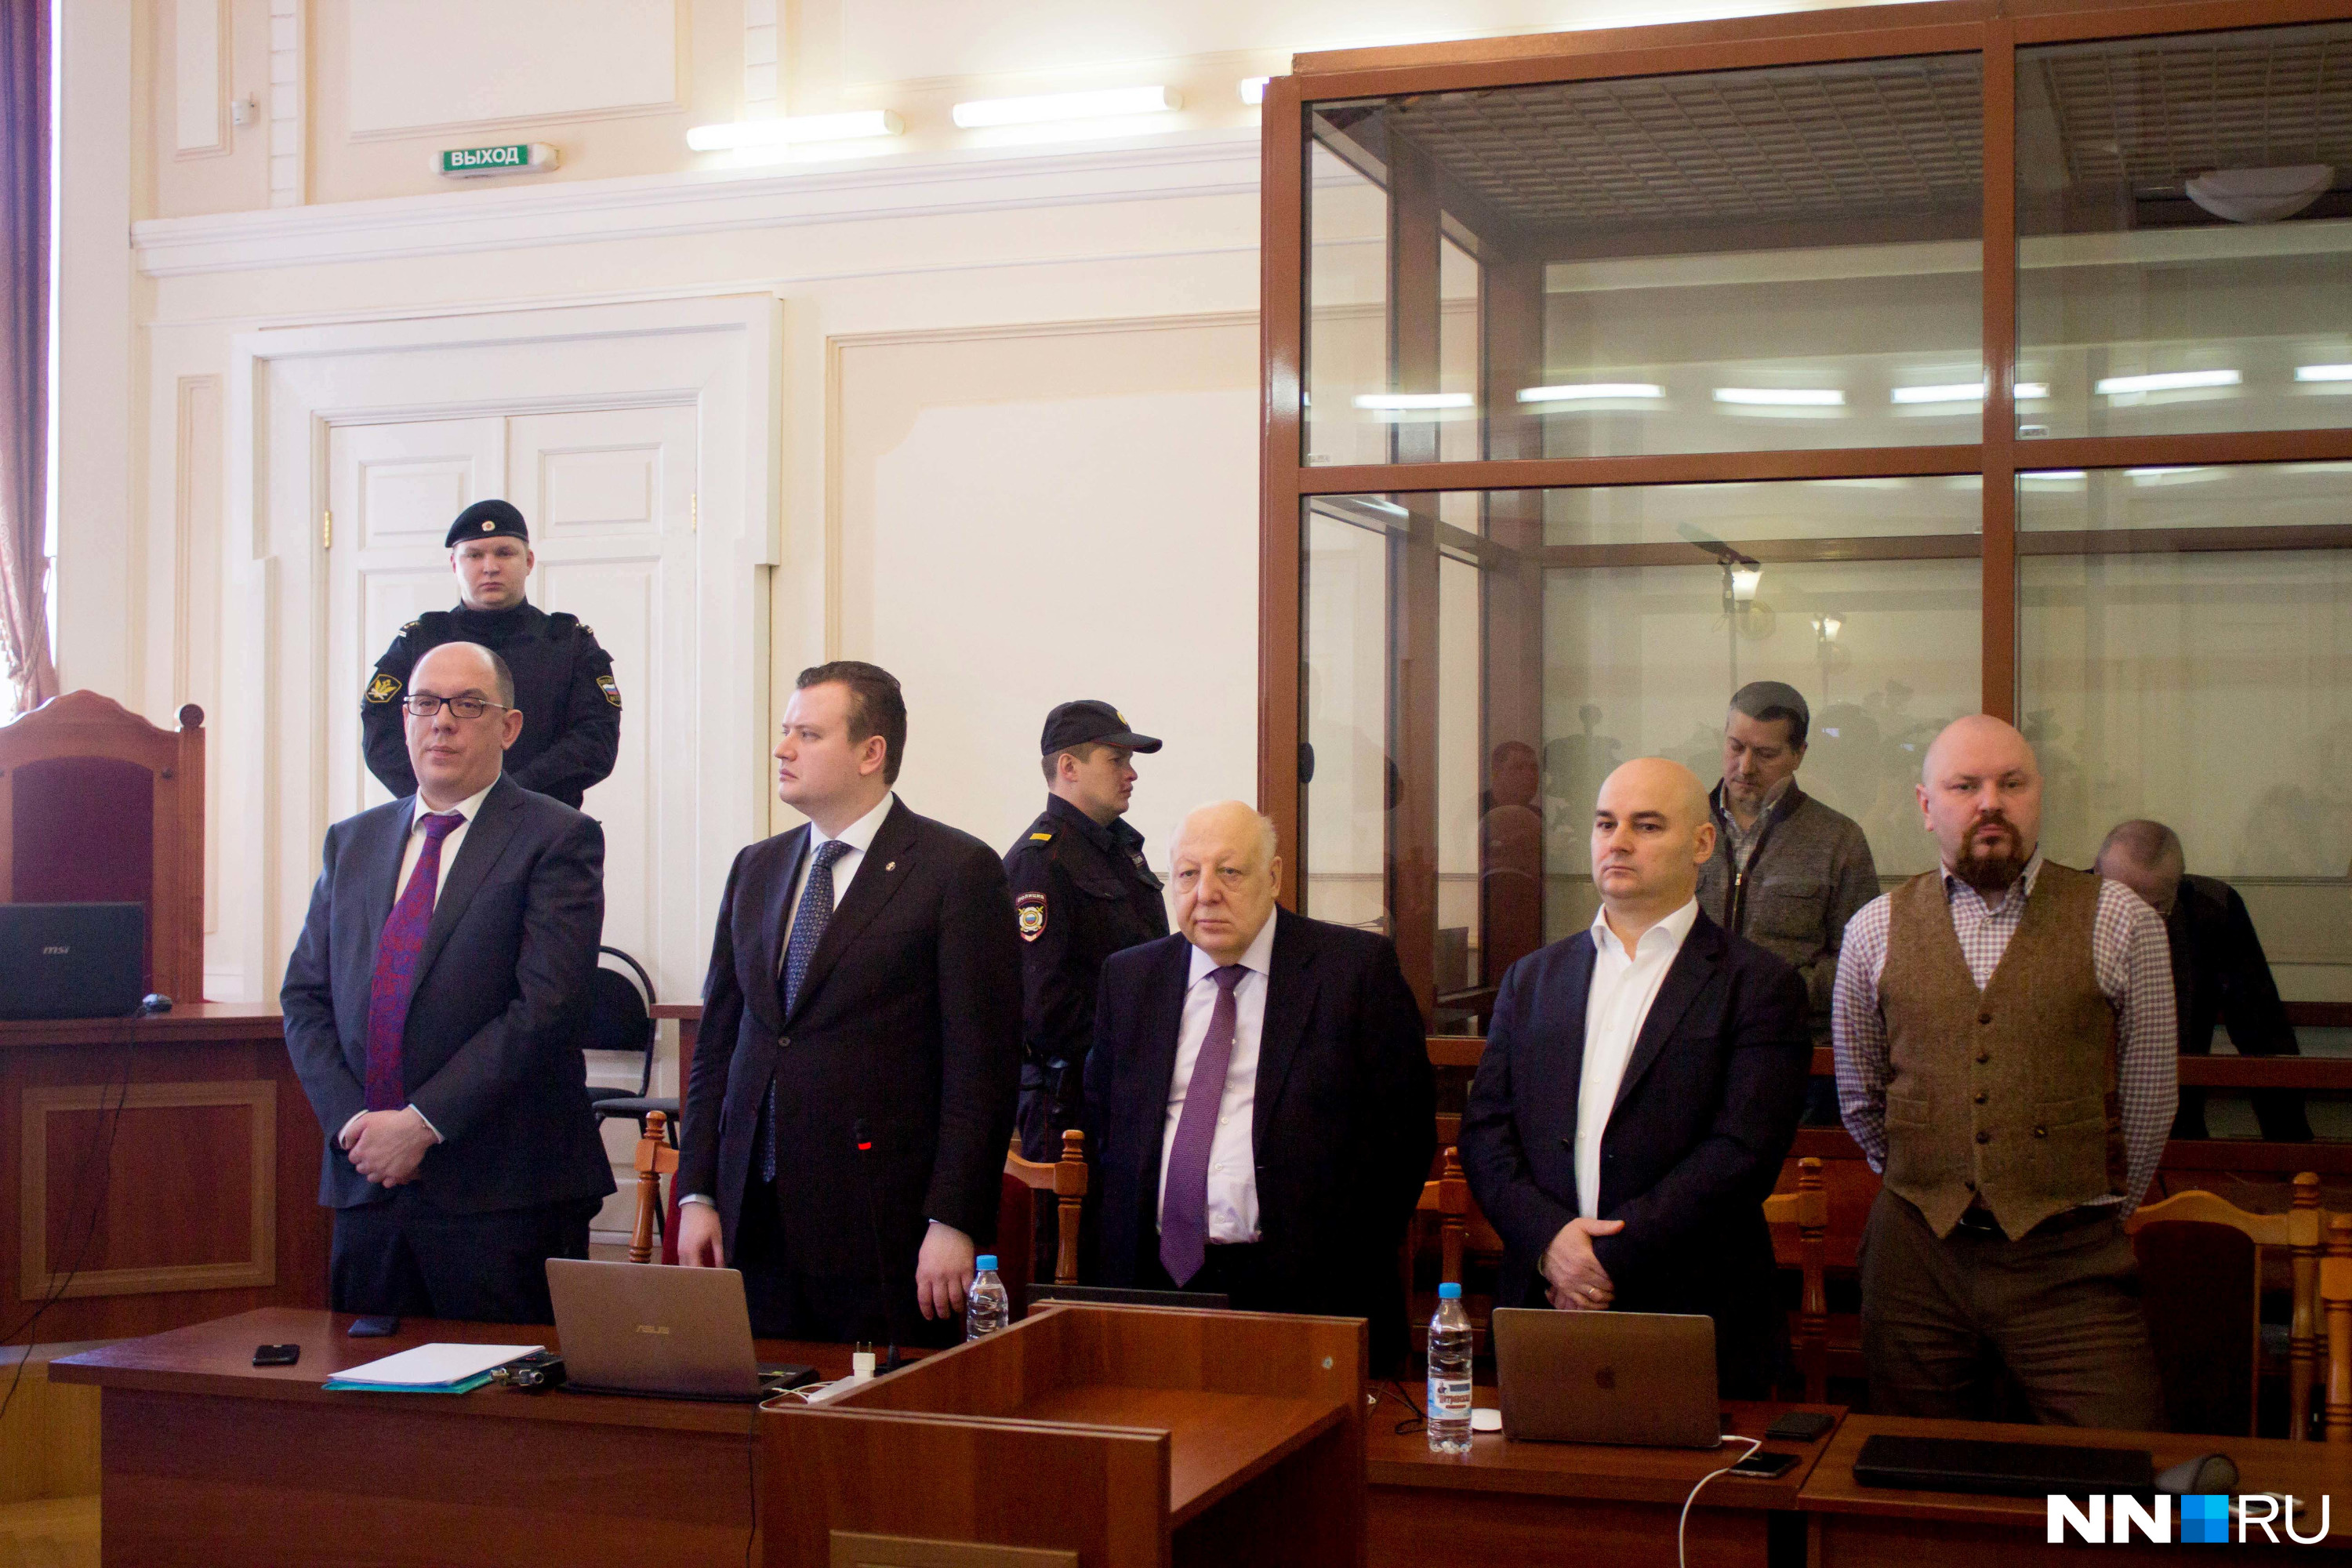 Сегодня интересы Сорокина в суде представляли пять адвокатов: Нагорный, Кравченко, Бурмистров, Богдан и Артемьев